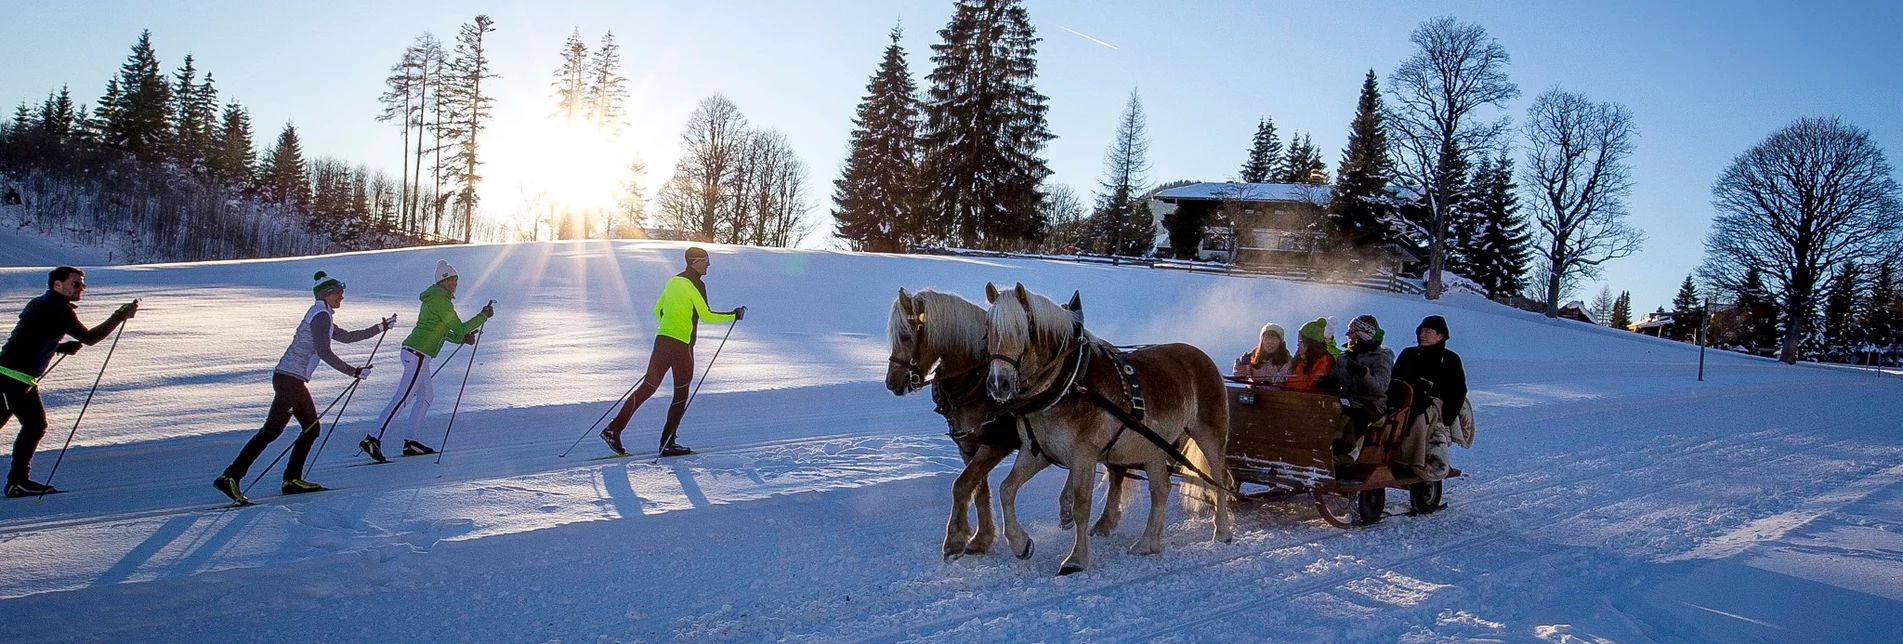 Horse Carriage Ride "Rössinground" - sleighs - Touren-Impression #1 | © Erlebnisregion Schladming-Dachstein